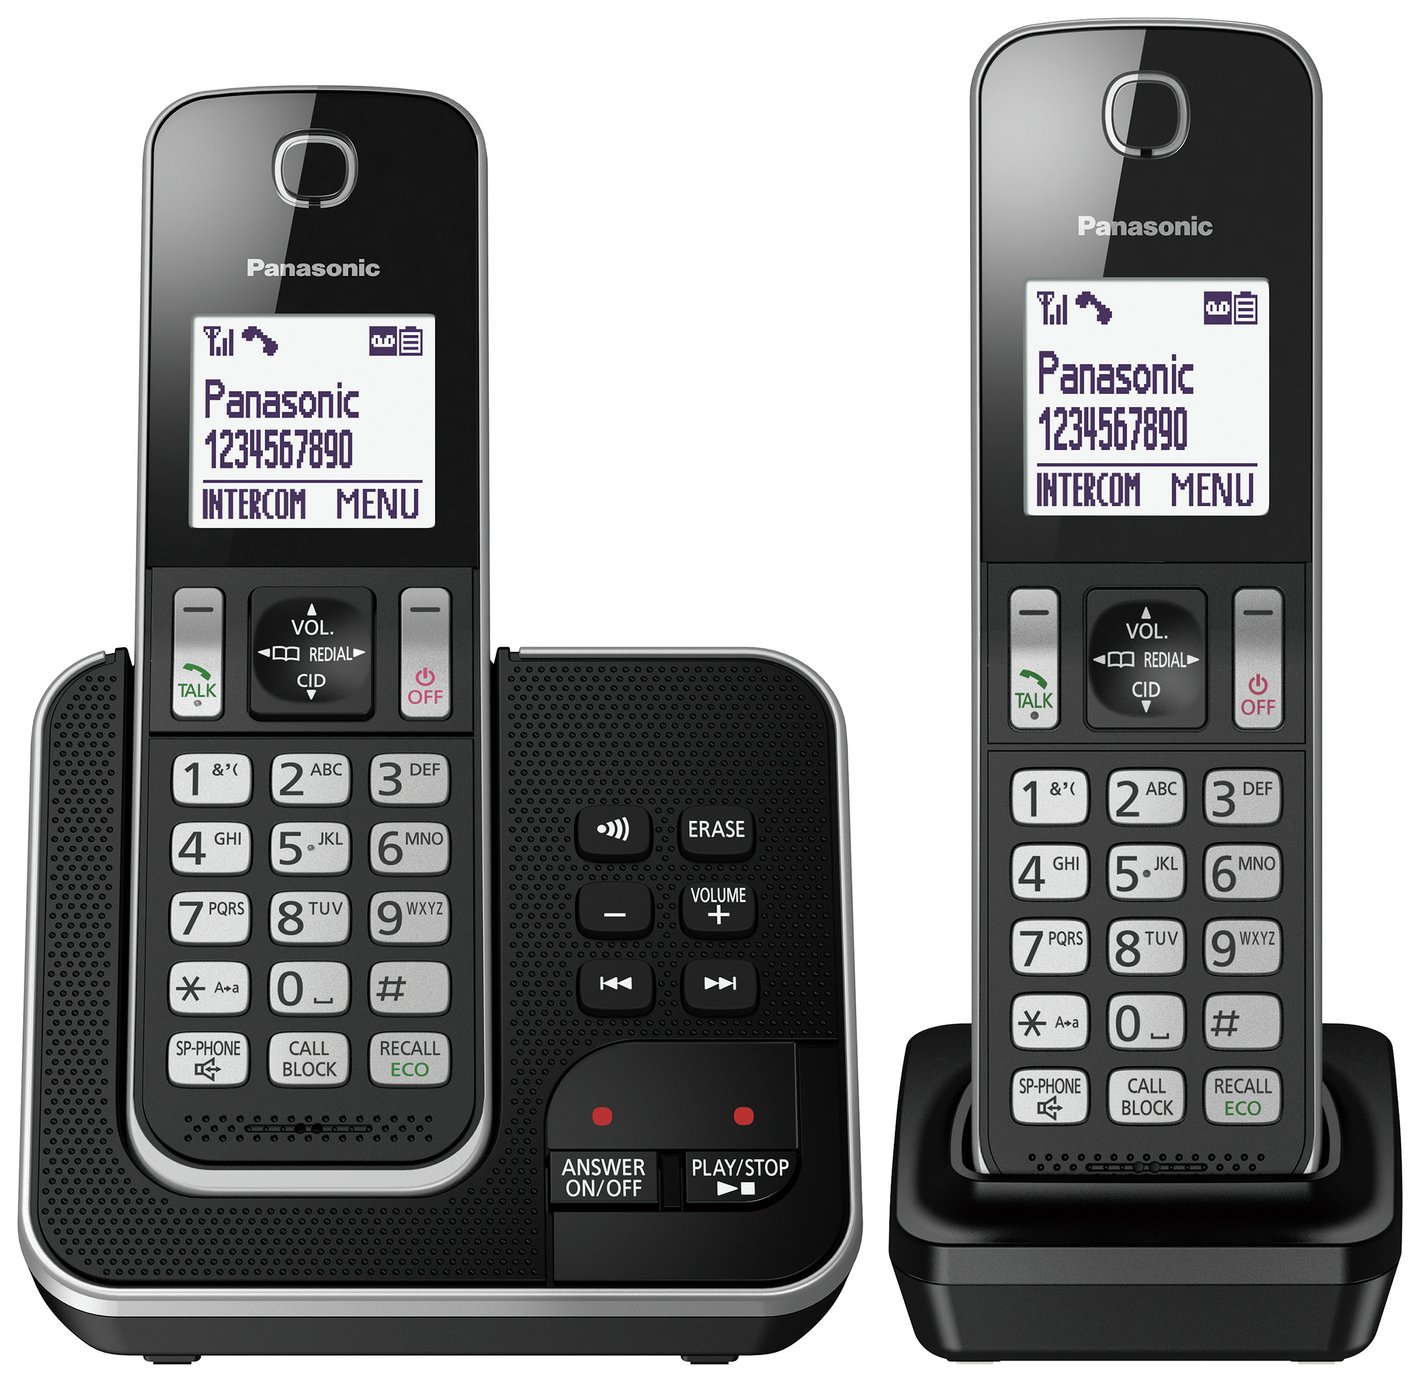 Panasonic KX-TGD622 Cordless Phone with Answer Machine-Twin